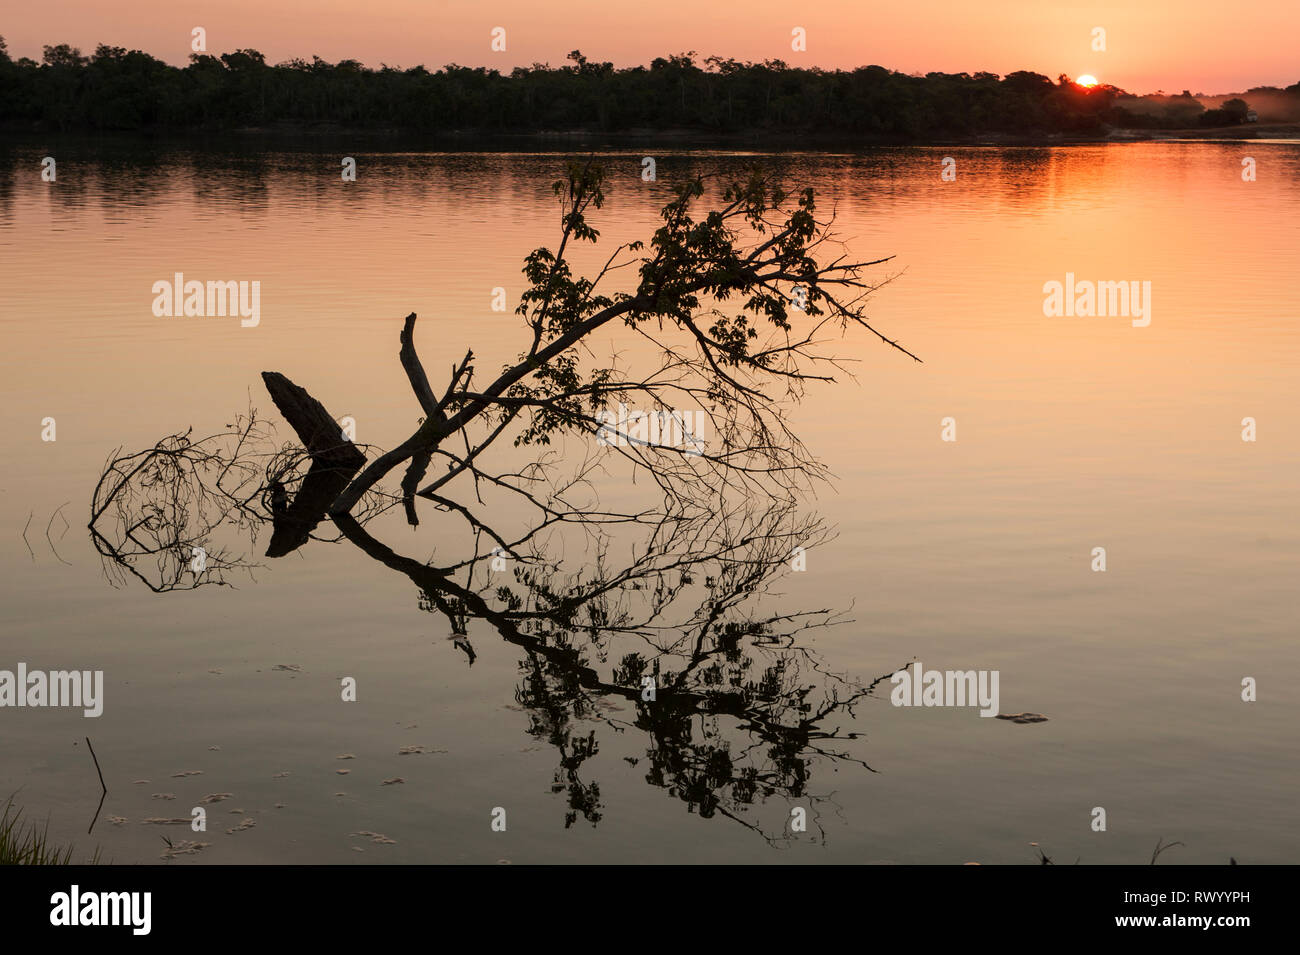 El estado de Mato Grosso, Brasil. Atardecer sobre el río Xingu con árboles sumergidos. Foto de stock